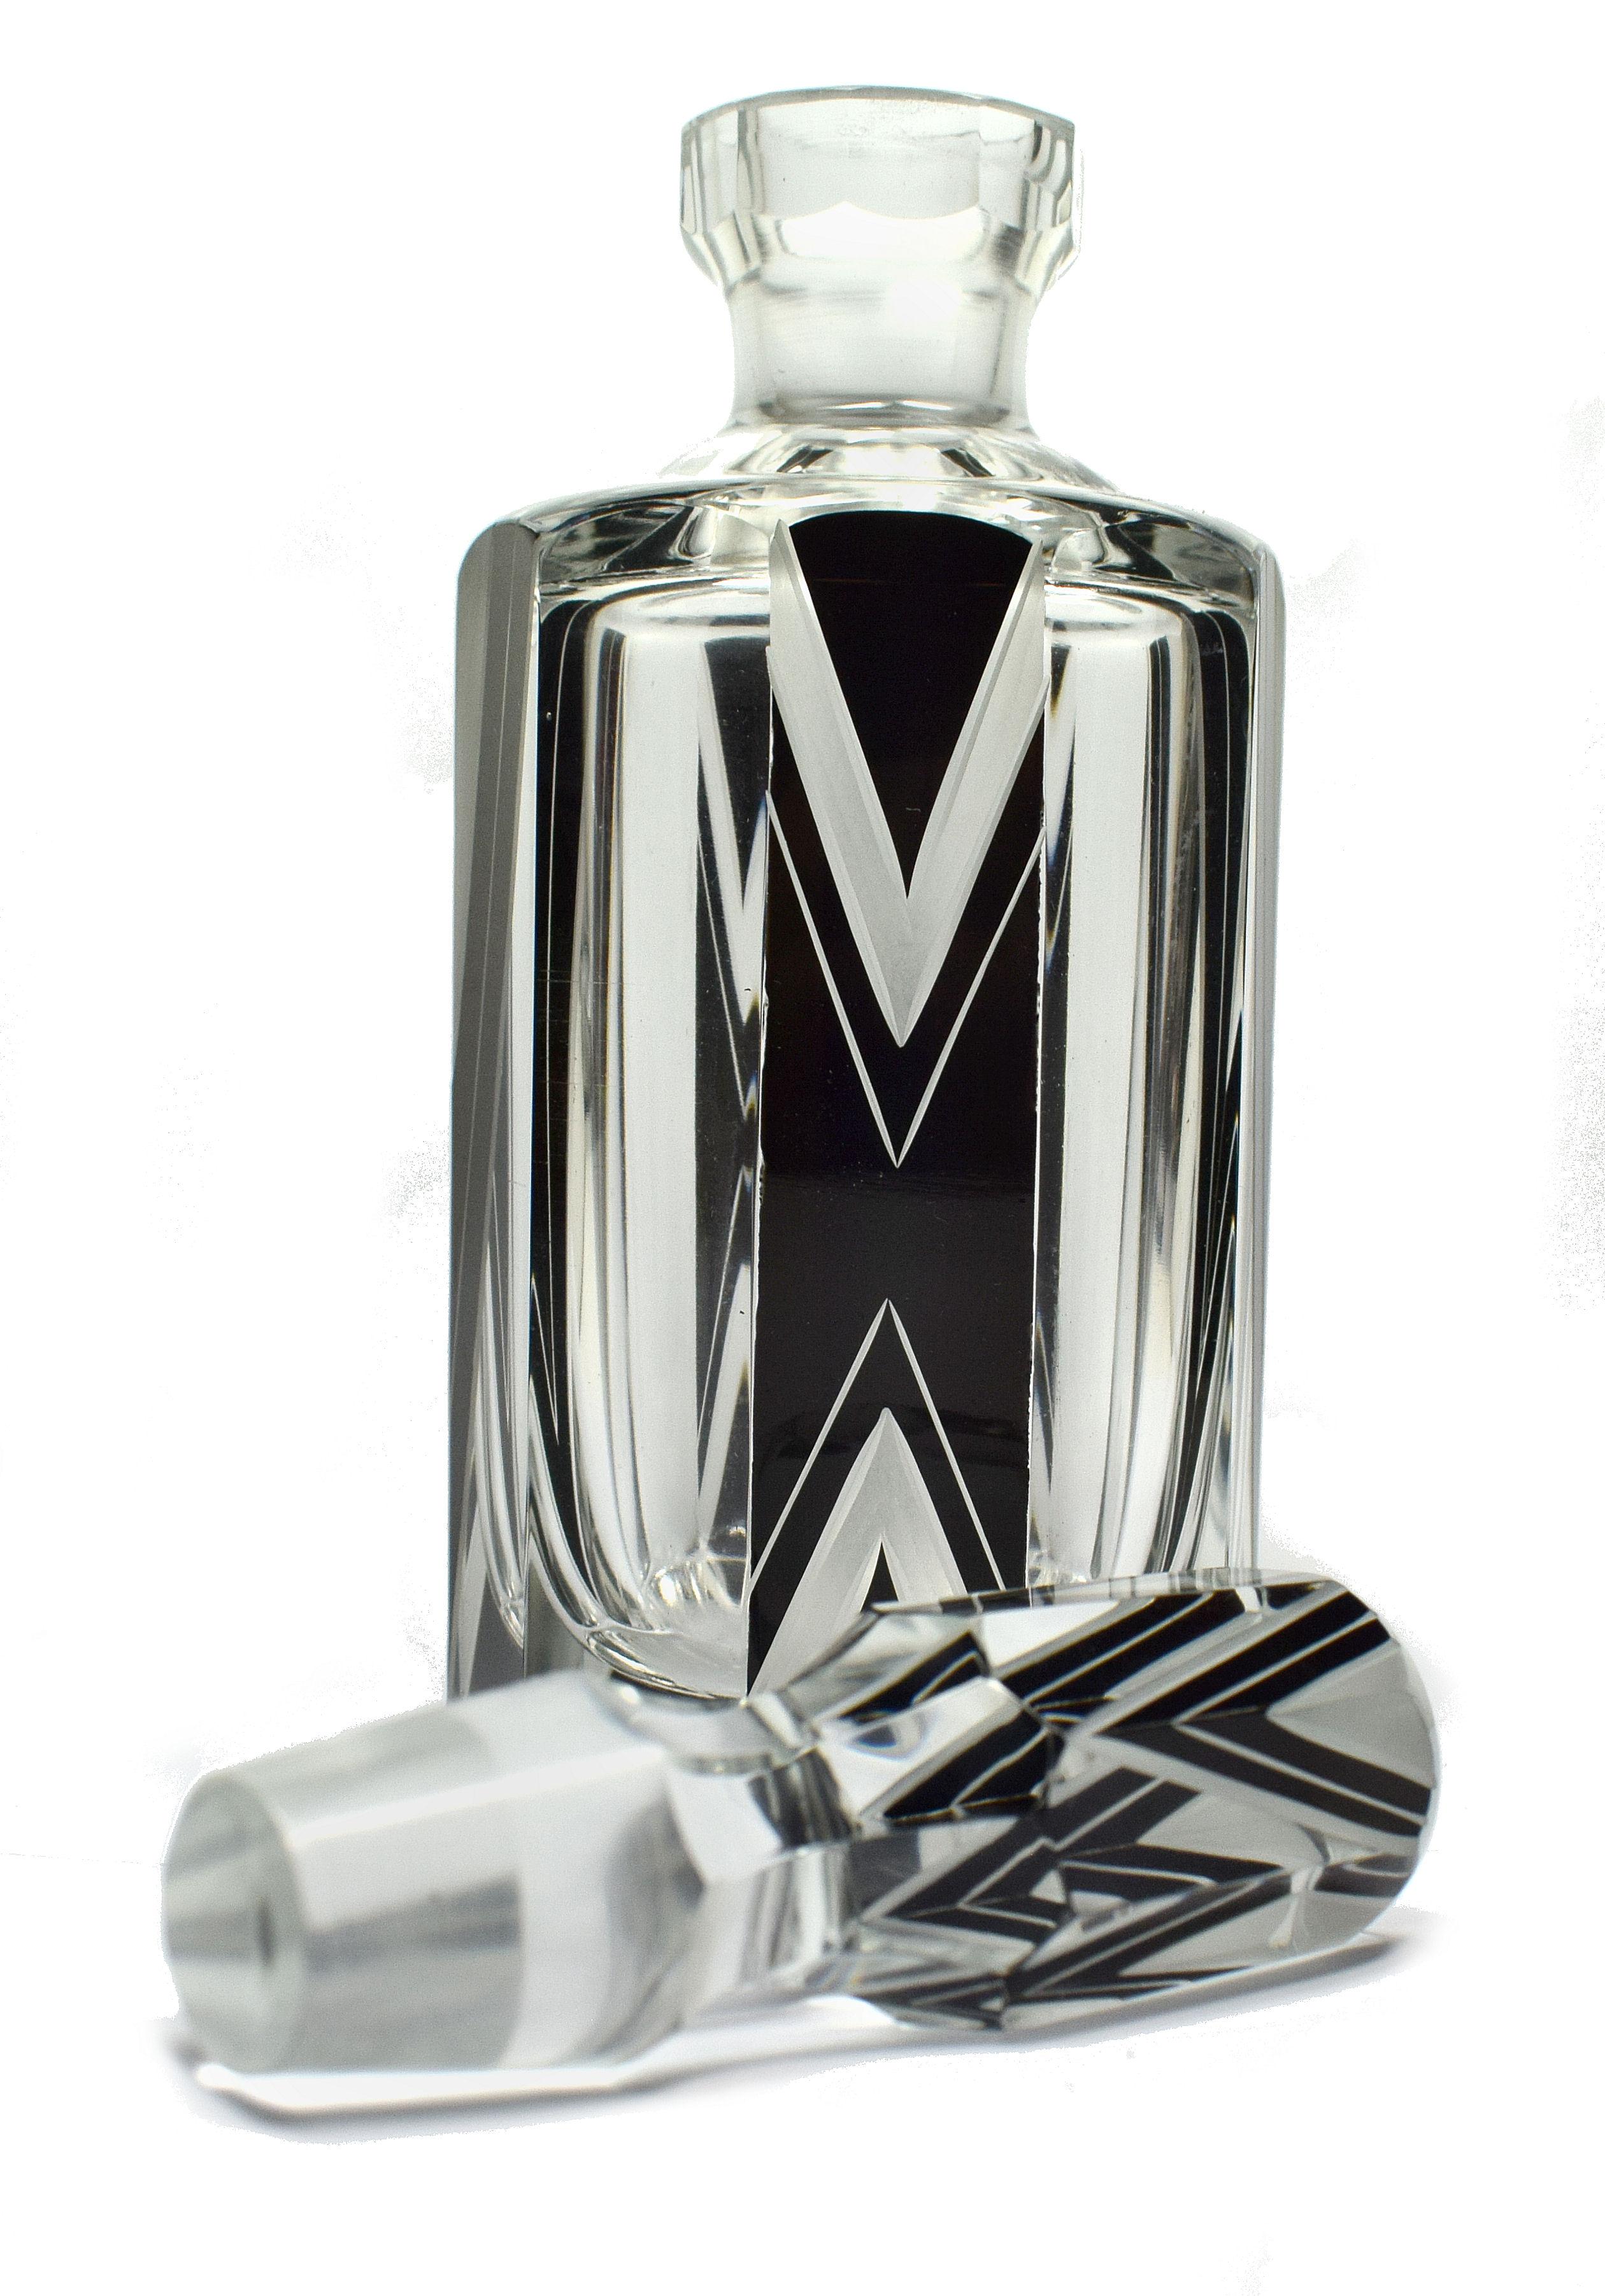 Nous vous proposons ce magnifique flacon de parfum en verre Art Déco des années 1930. Il s'agit d'une beauté absolue et d'une trouvaille rare. L'émail noir et le verre gravé de formes géométriques constituent le décor de l'extérieur de la bouteille